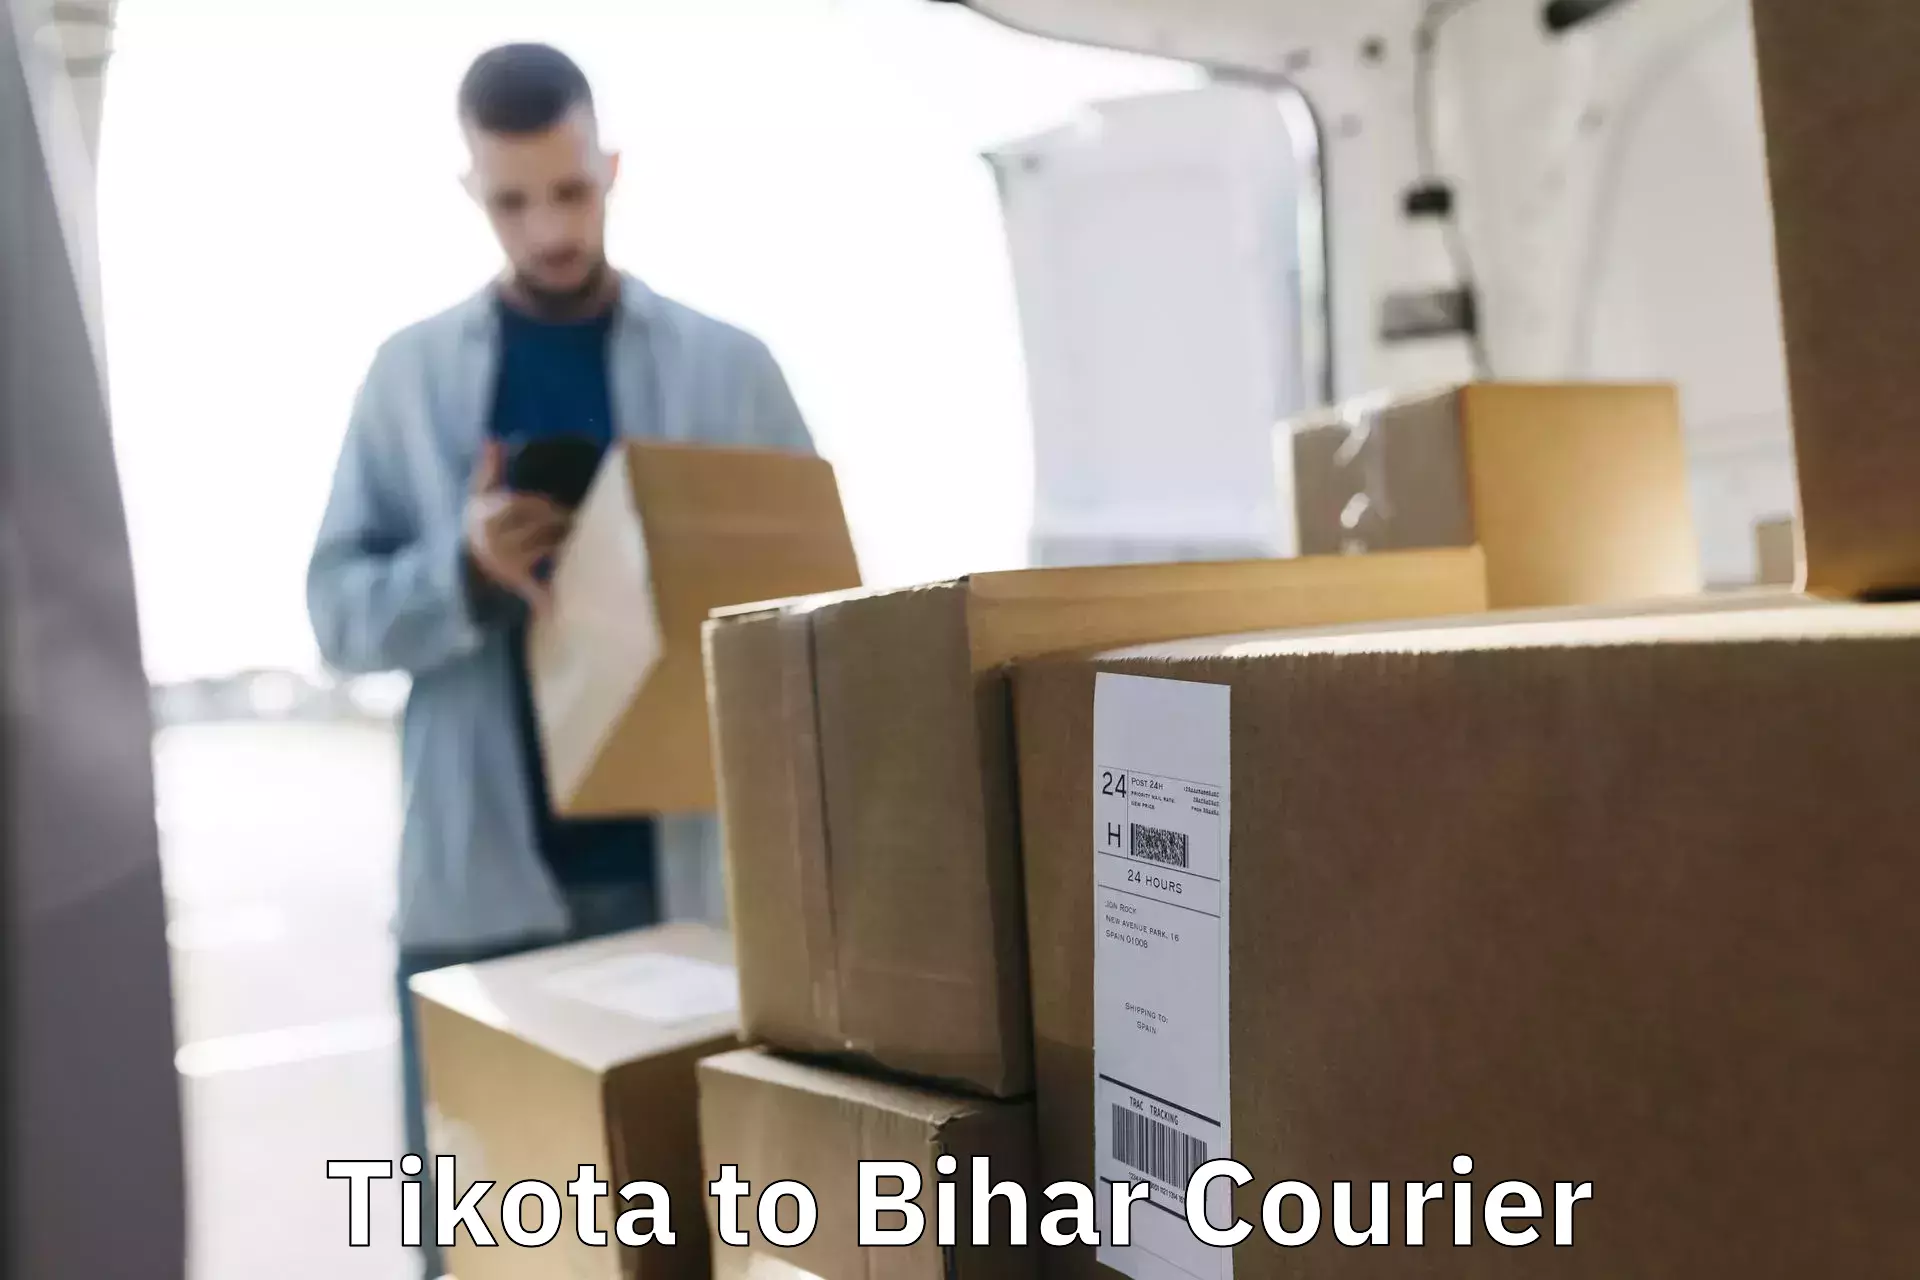 Pharmaceutical courier Tikota to Bihar